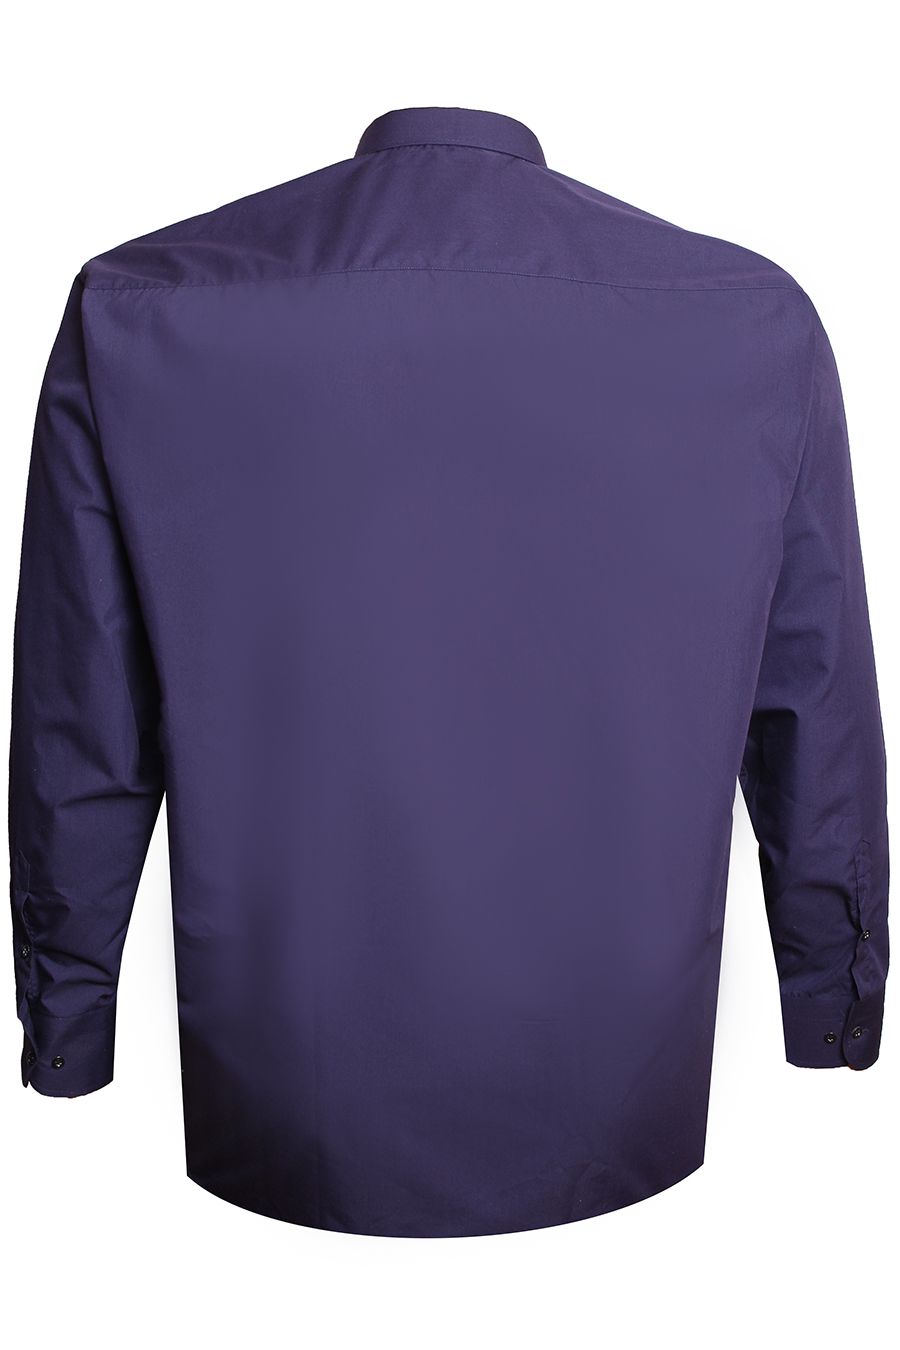 Рубашка Birindelli однотонная тёмно-синяя большого размера